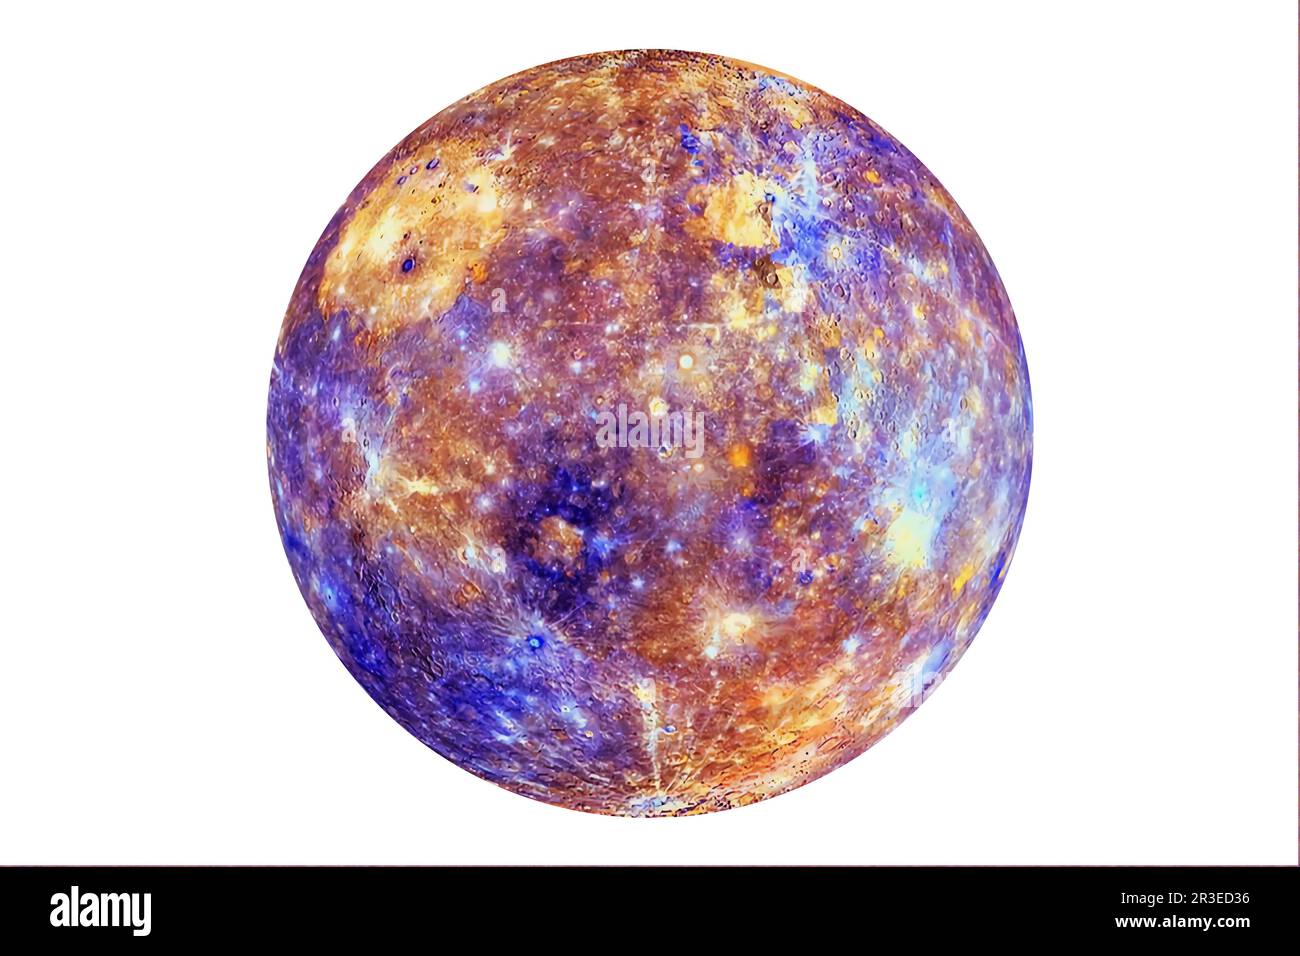 Planet Mercury isolated on white background. Elements of this image furnishing NASA. Stock Photo